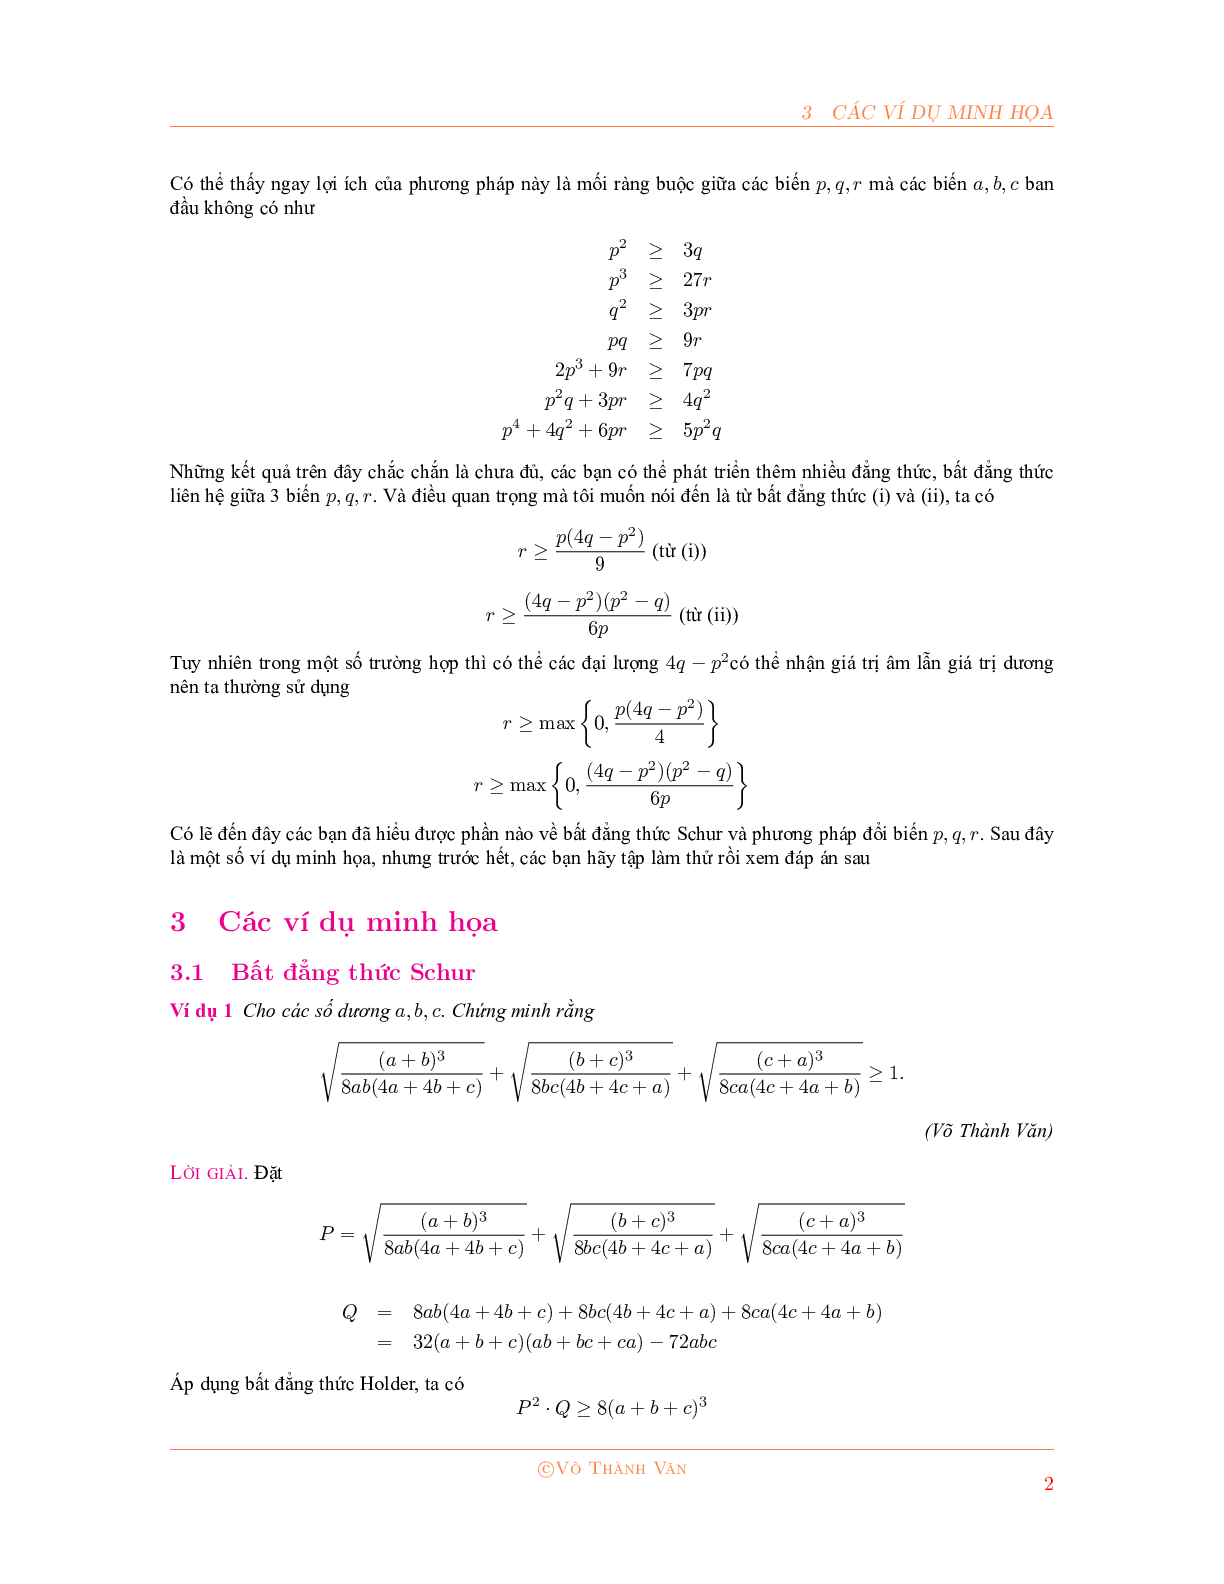 Bất đẳng thức Schur và phương pháp đổi biến P, Q, R 2023 đầy đủ, chi tiết (trang 2)